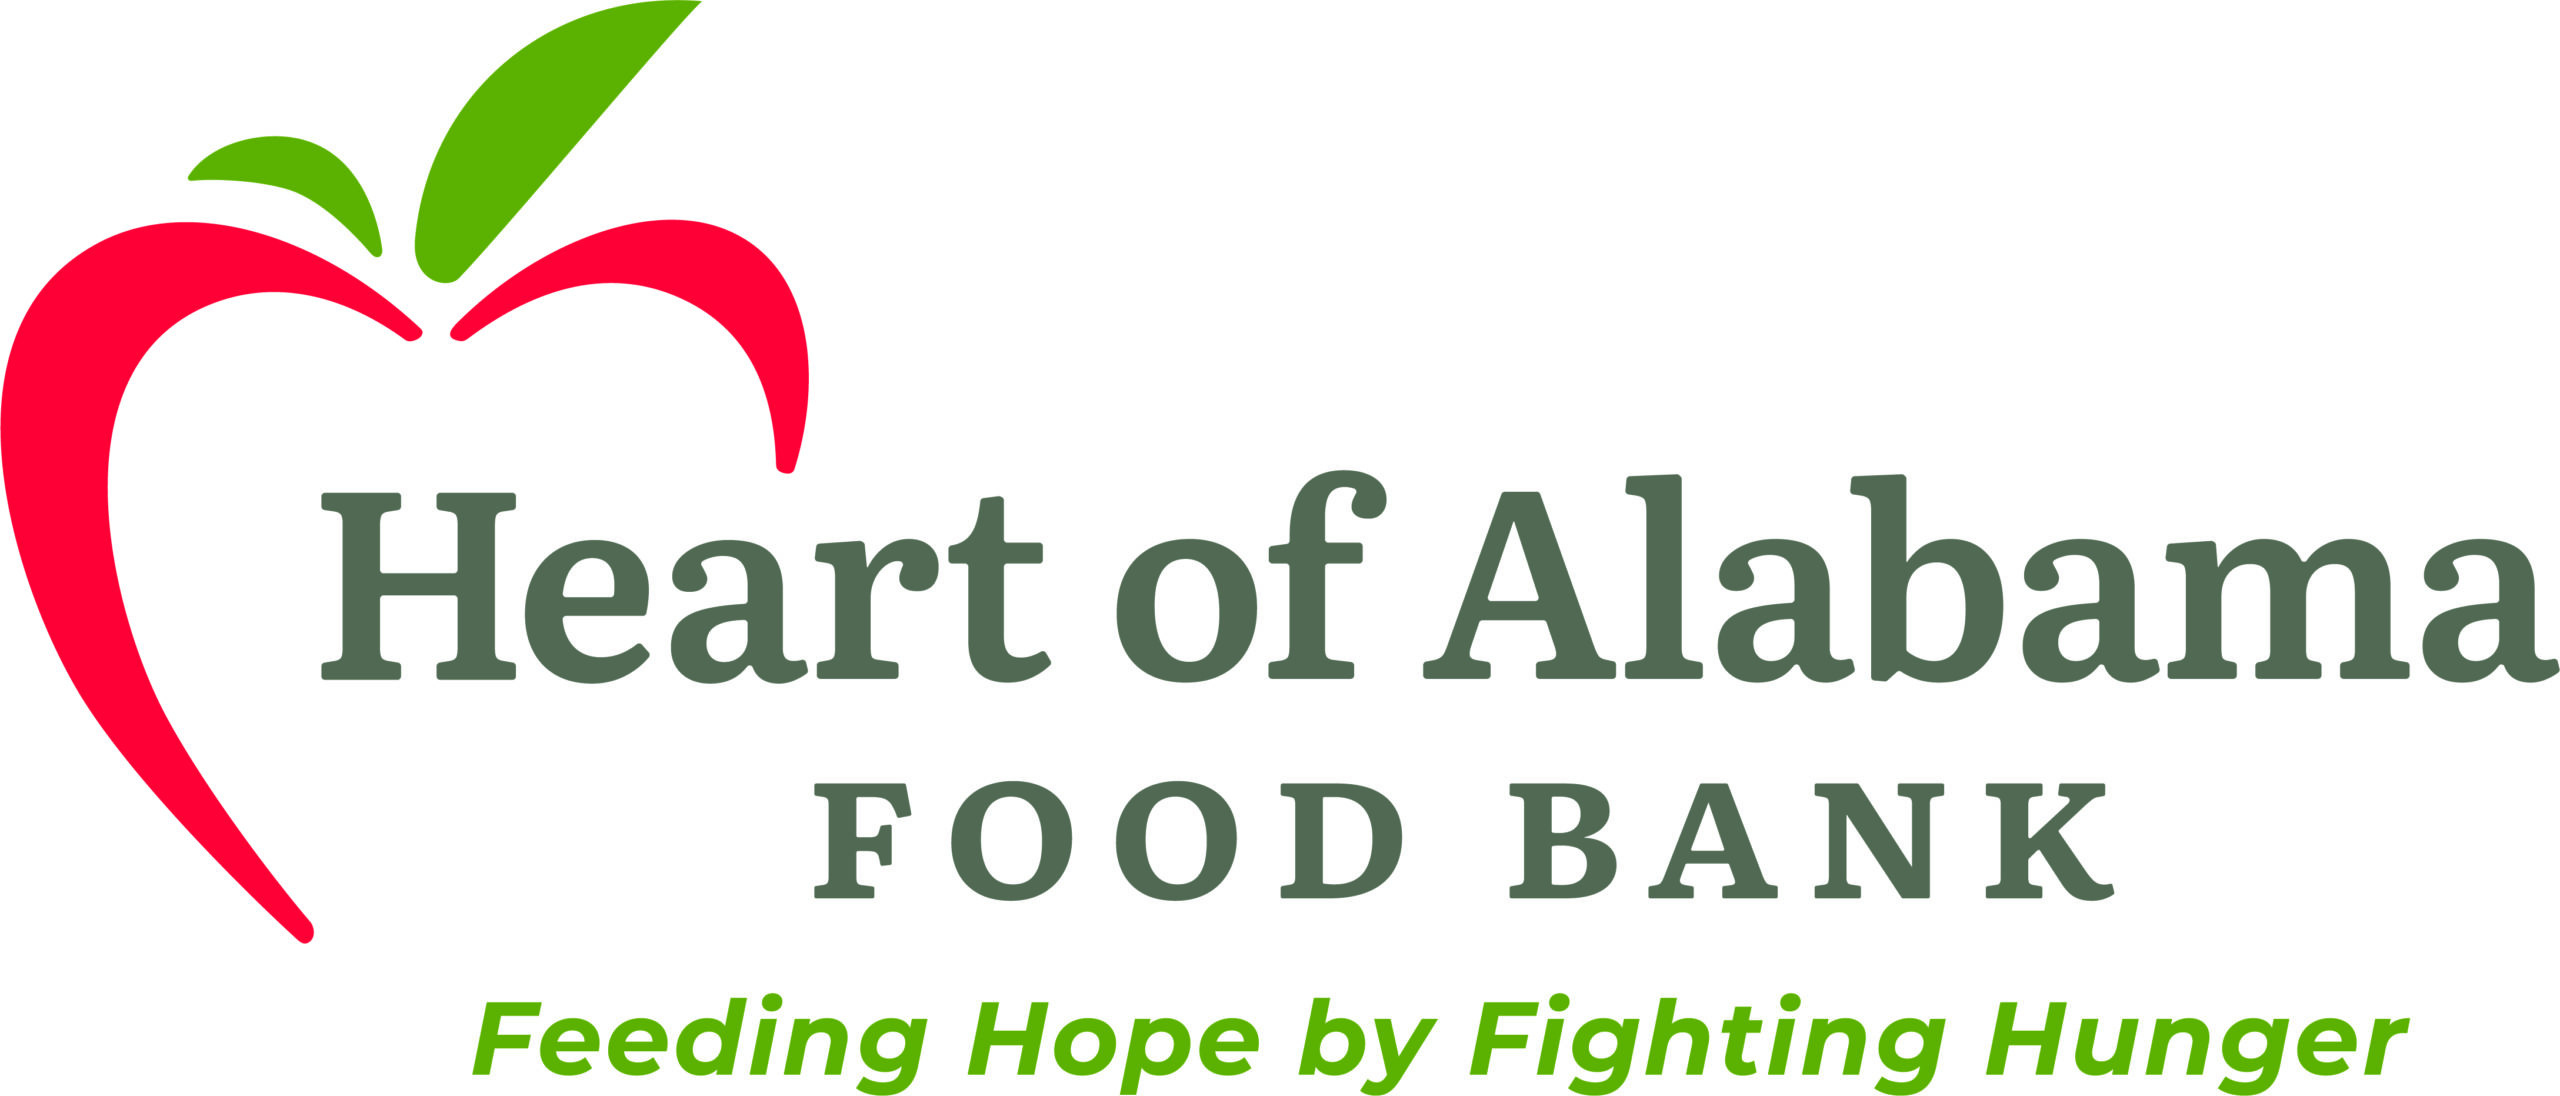 Heart of Alabama Food Bank